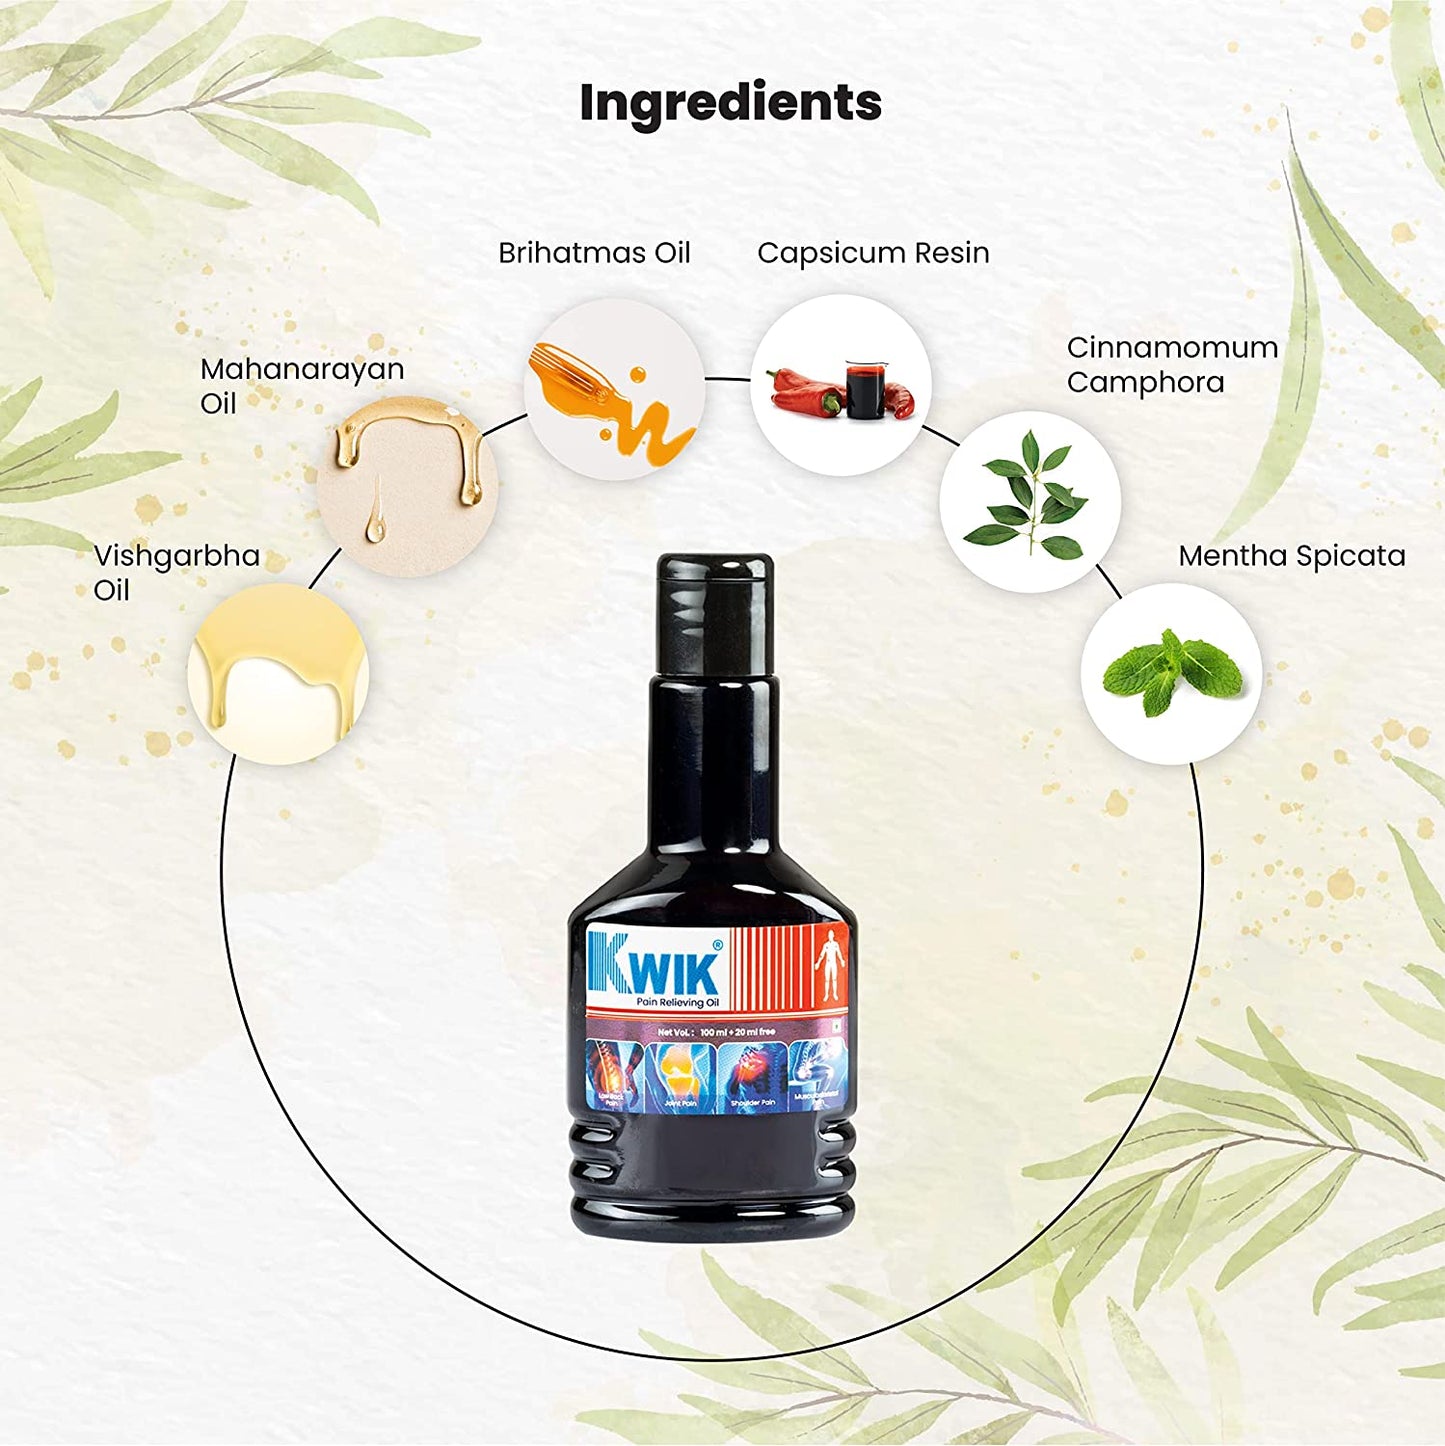 Highlighting Kwik Oil ingredients